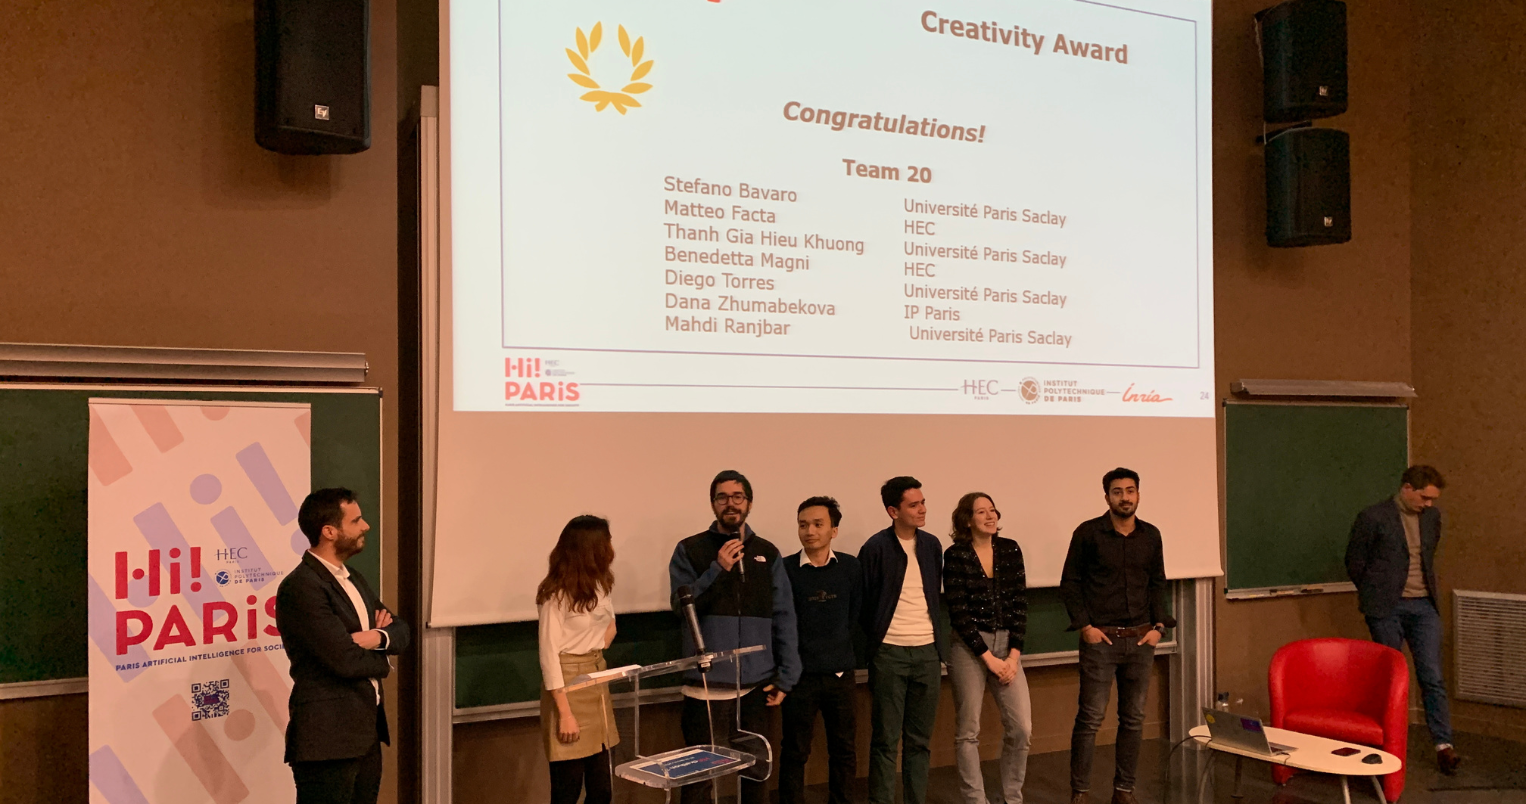 Hi! PARIS hackathon 2023 - Creativity Award by Vinci - HEC Paris 2023